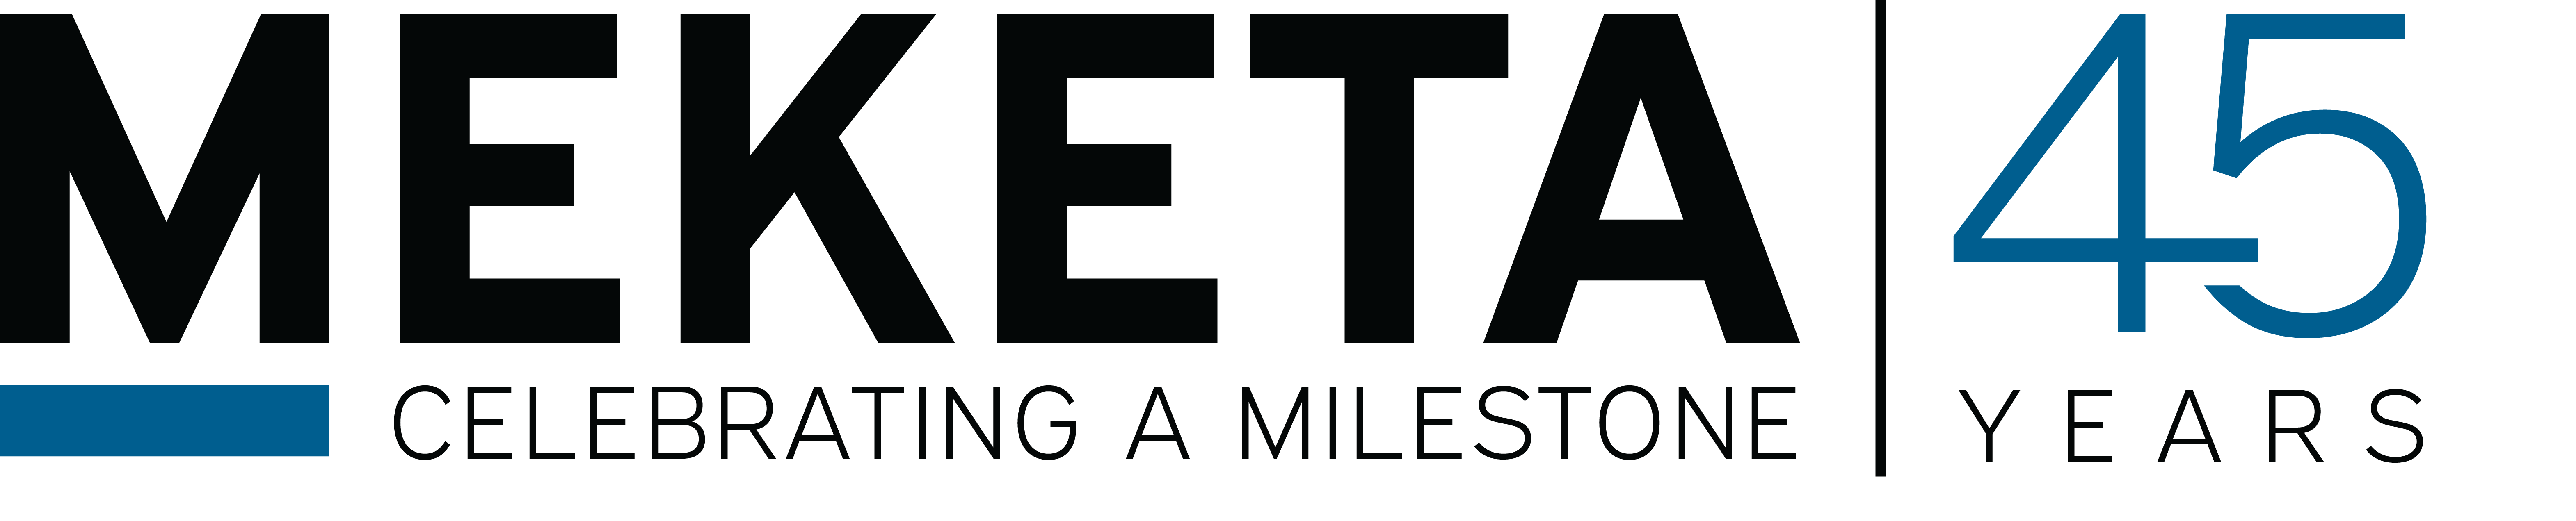 Meketa logo